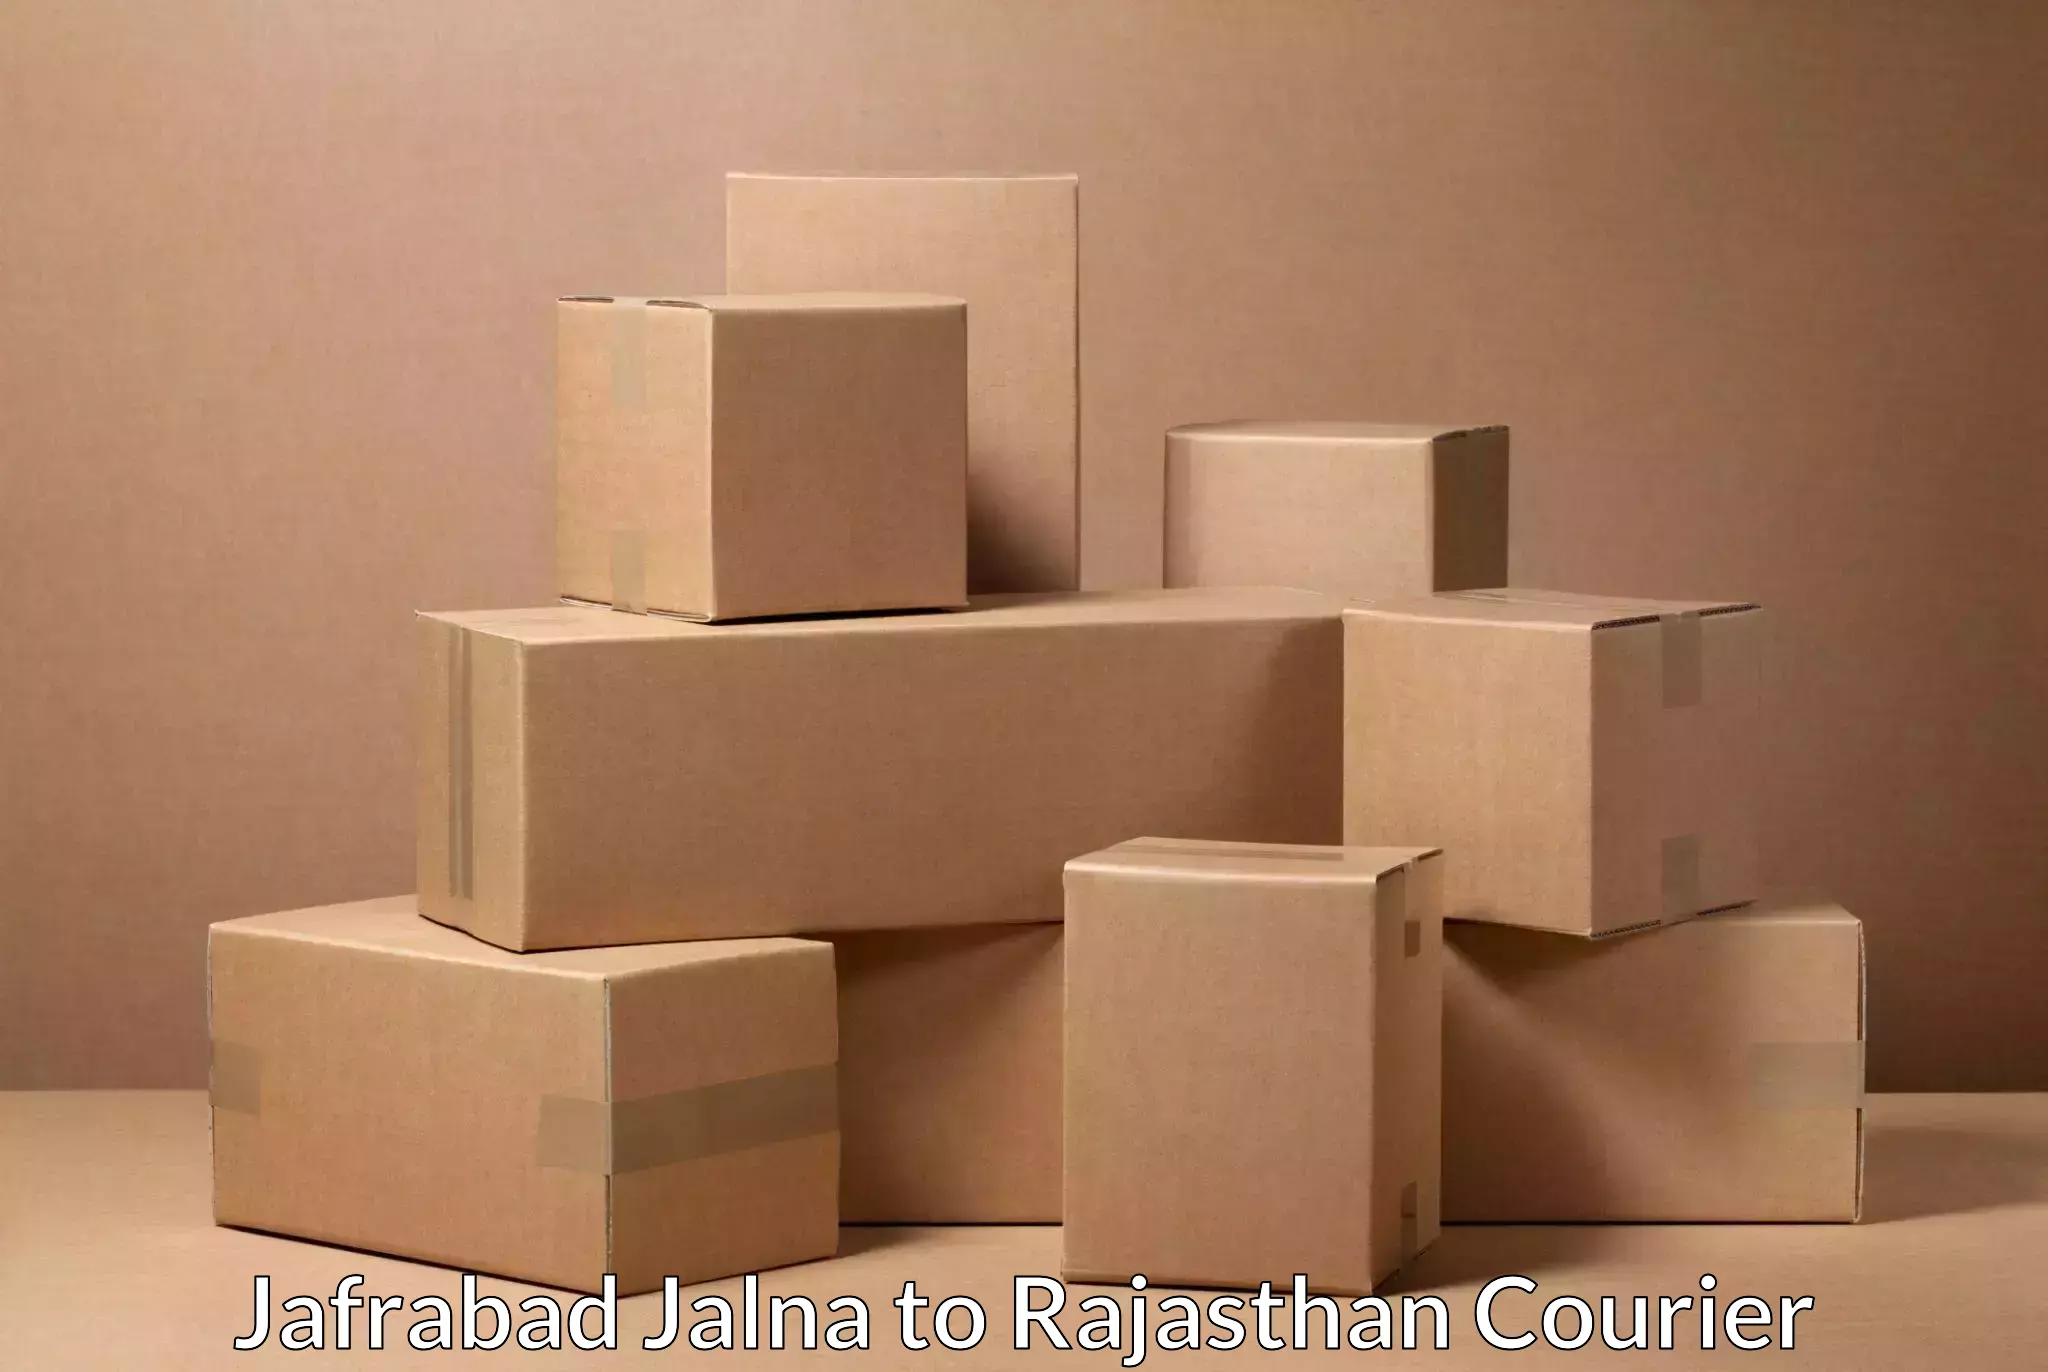 Efficient parcel tracking Jafrabad Jalna to Nagar